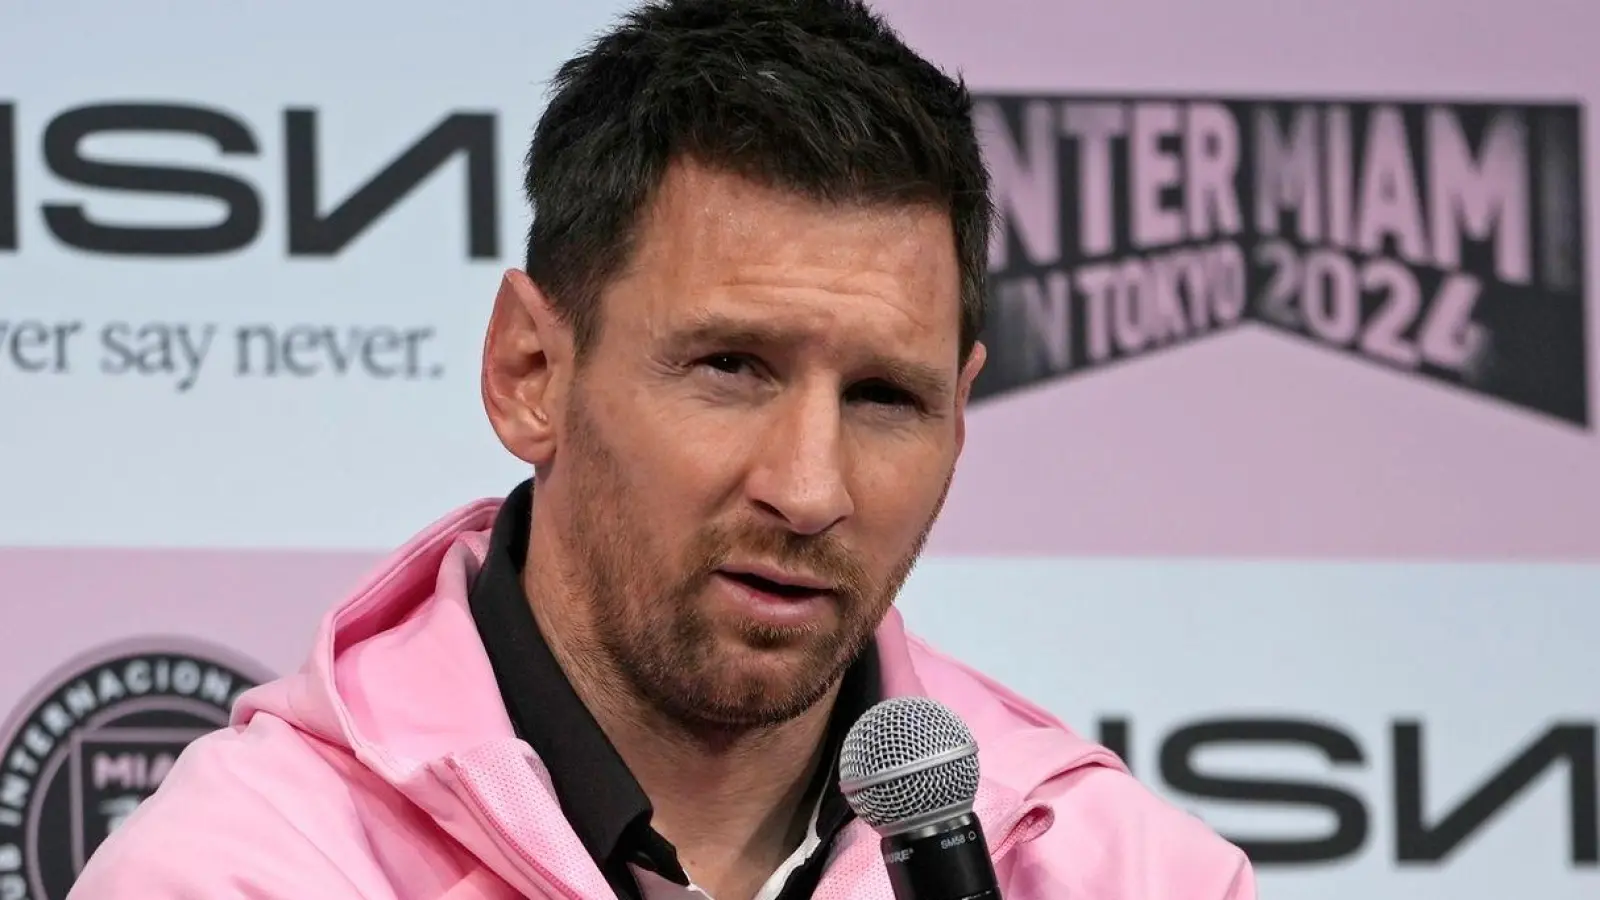 Inter Miamis Lionel Messi hat sich auf einer Pressekonferenz für seine Spielpause gerechtfertigt. (Foto: Shuji Kajiyama/AP)